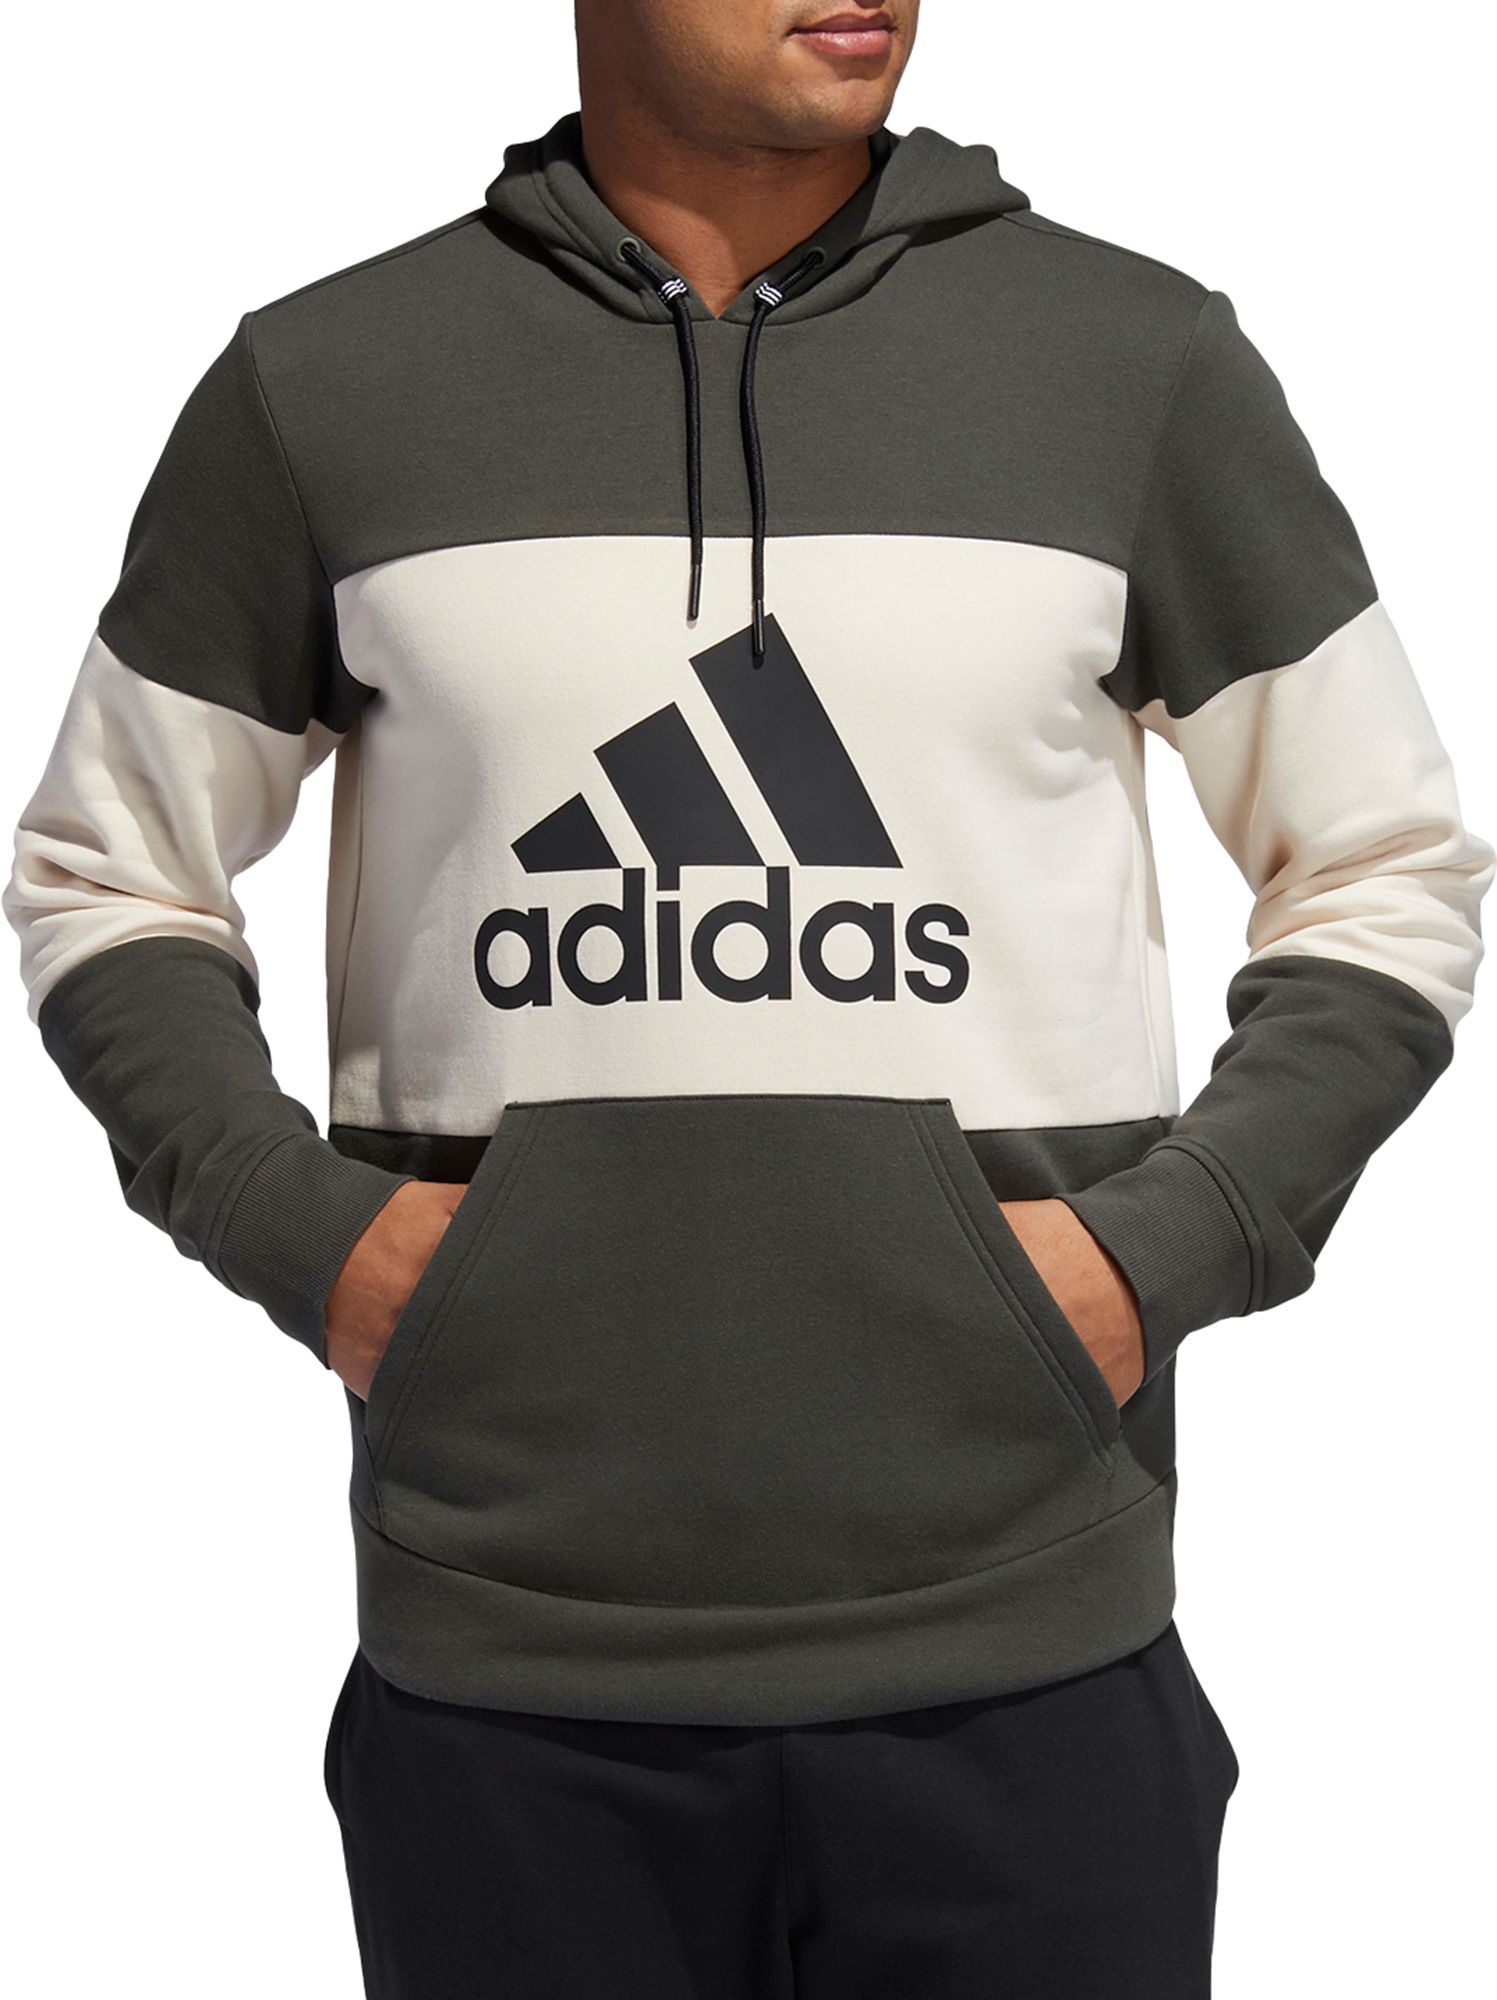 adidas men's sweatshirt online